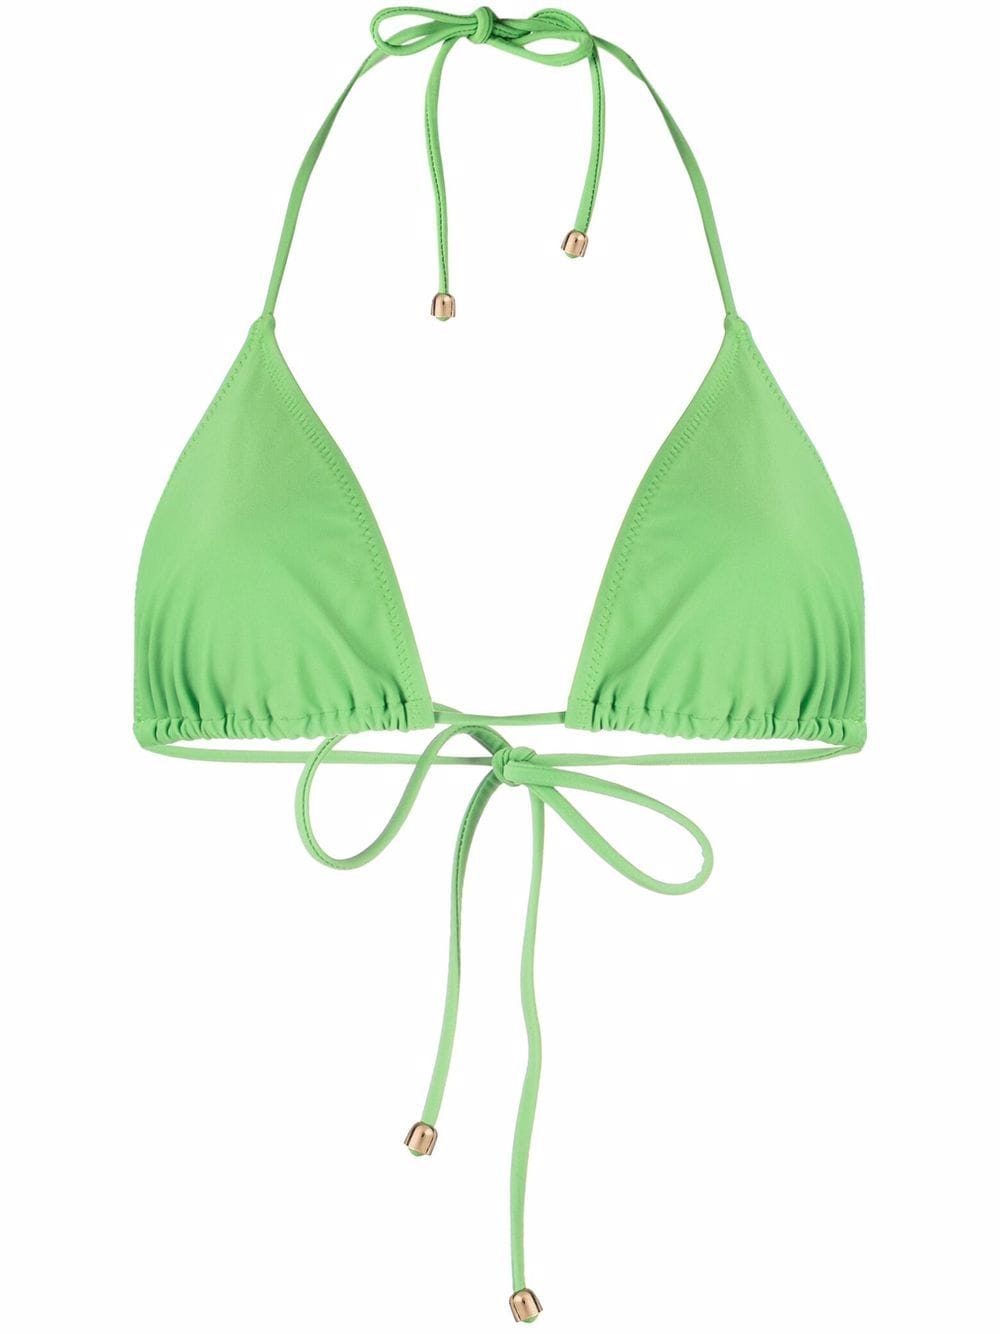 nanushka haut de bikini à dos-nu - vert